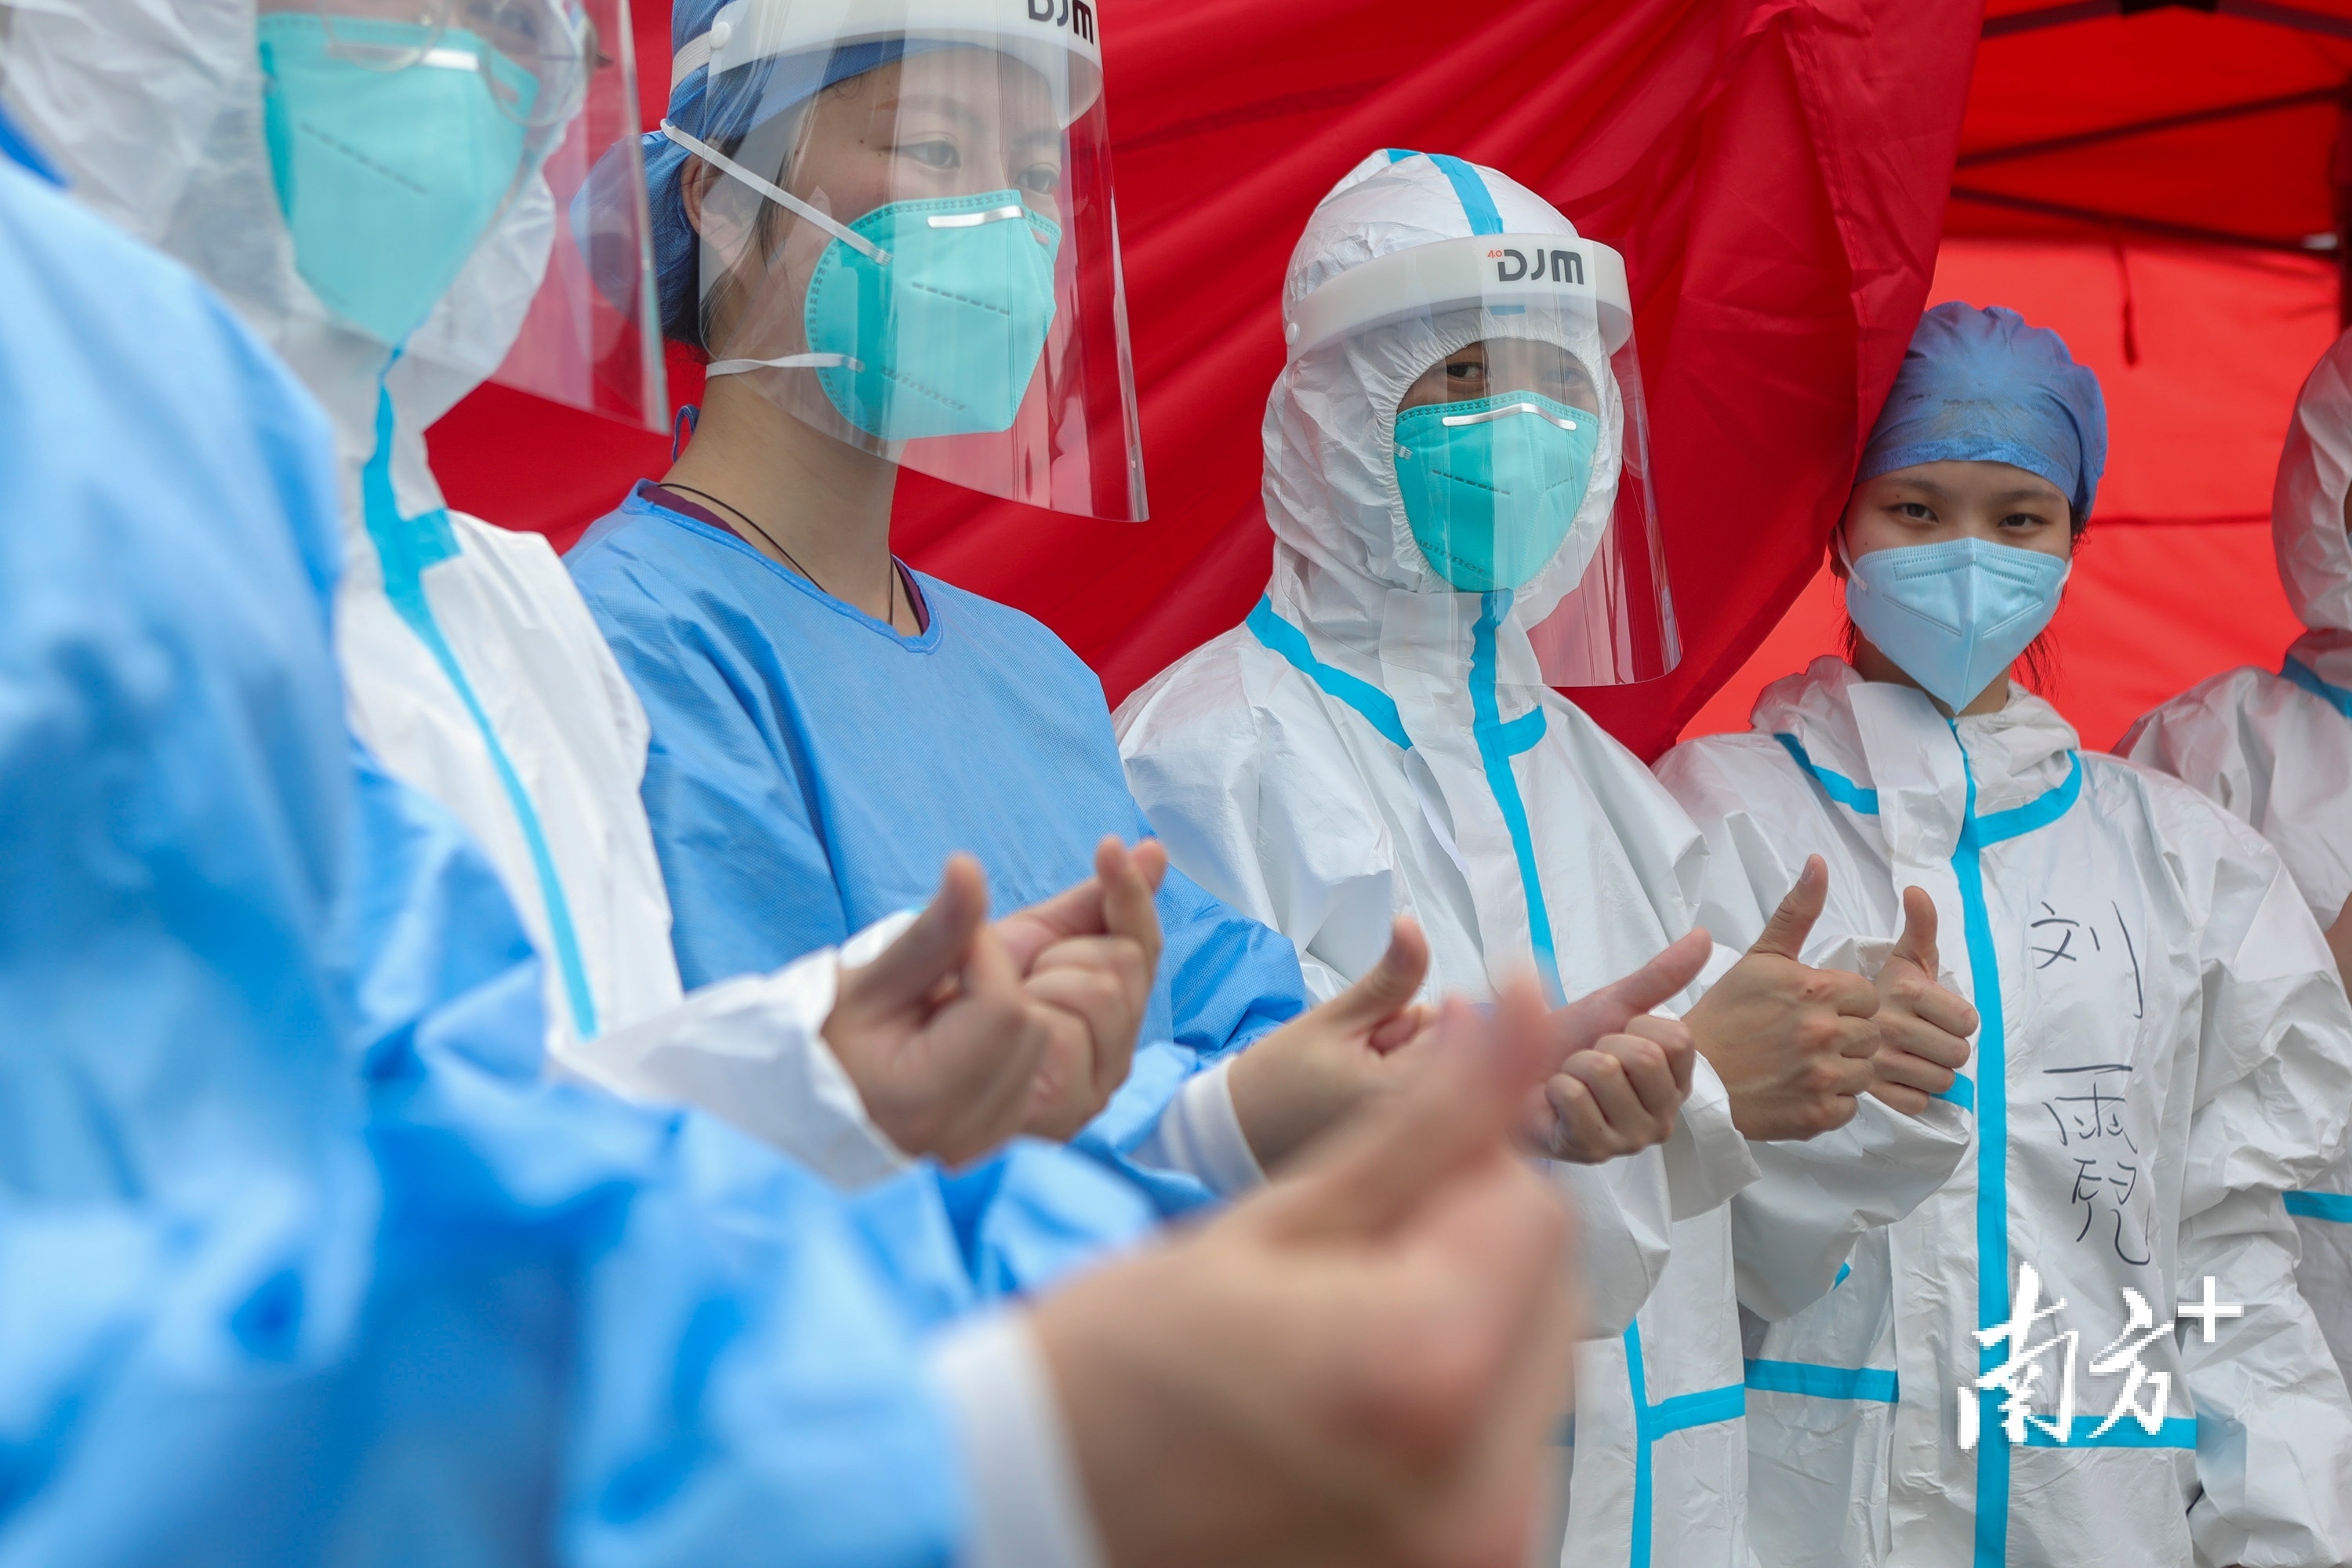 在深圳市龙岗区上雪科技园核酸检测点，换班的医护人员互相鼓励打气。南方日报记者 朱洪波 摄